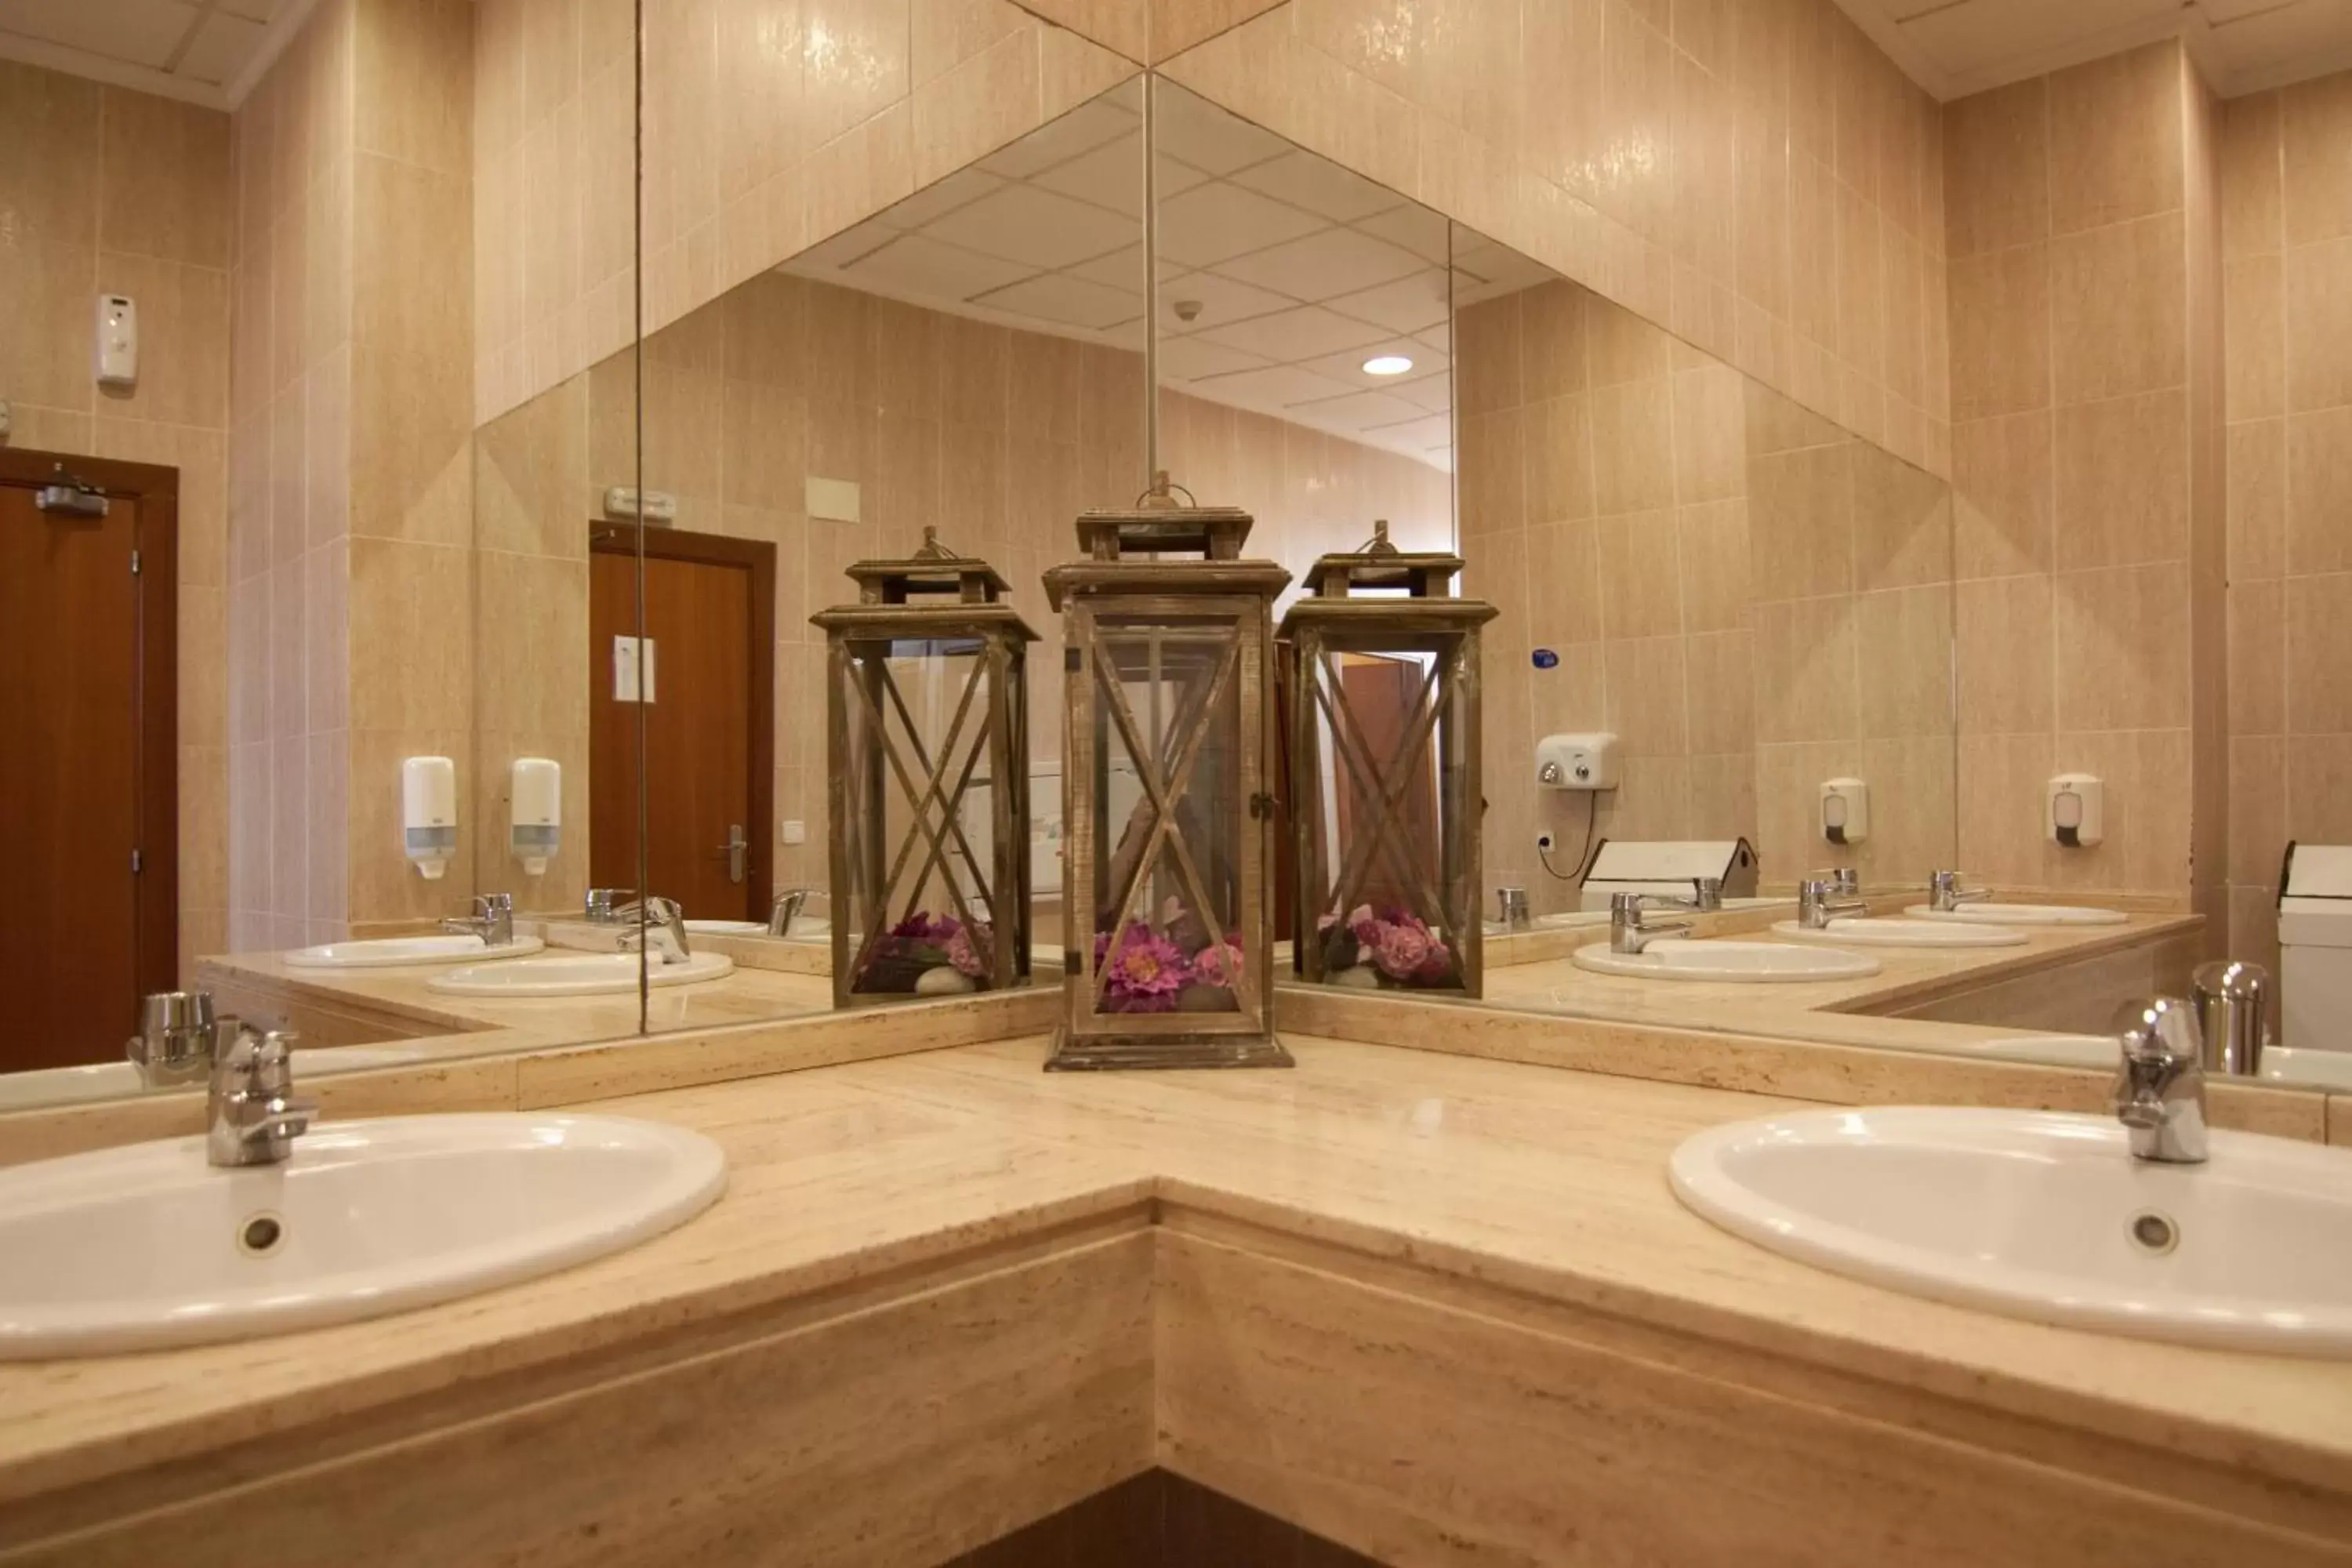 Decorative detail, Bathroom in Gran Hotel Peñiscola